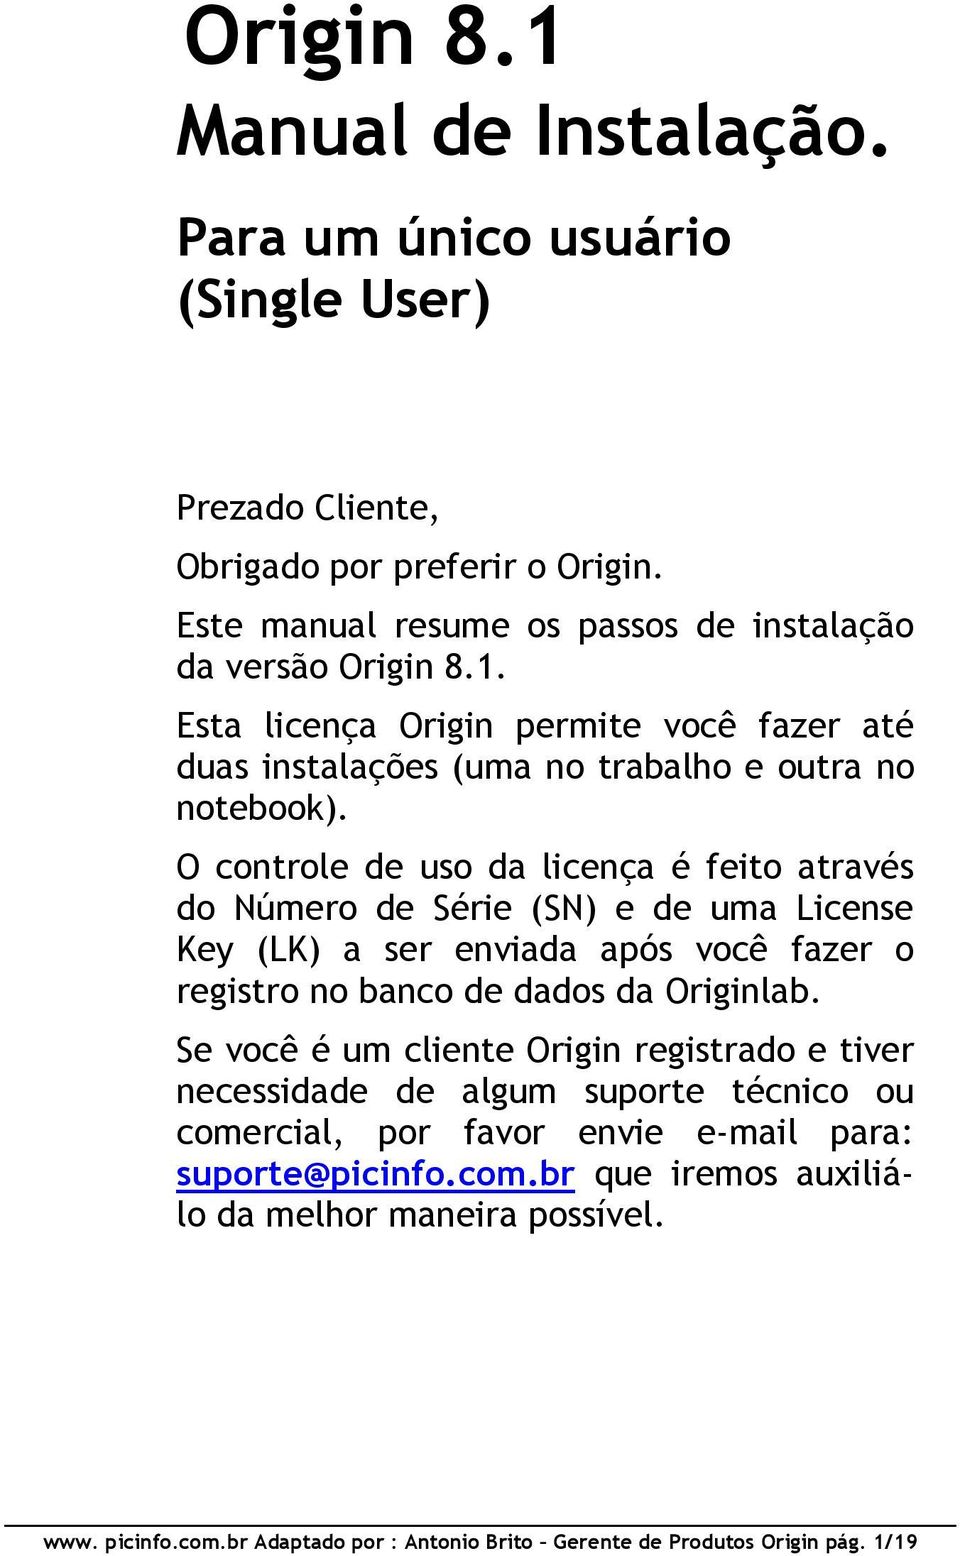 Se você é um cliente Origin registrado e tiver necessidade de algum suporte técnico ou comercial, por favor envie e-mail para: suporte@picinfo.com.br que iremos auxiliálo da melhor maneira possível.